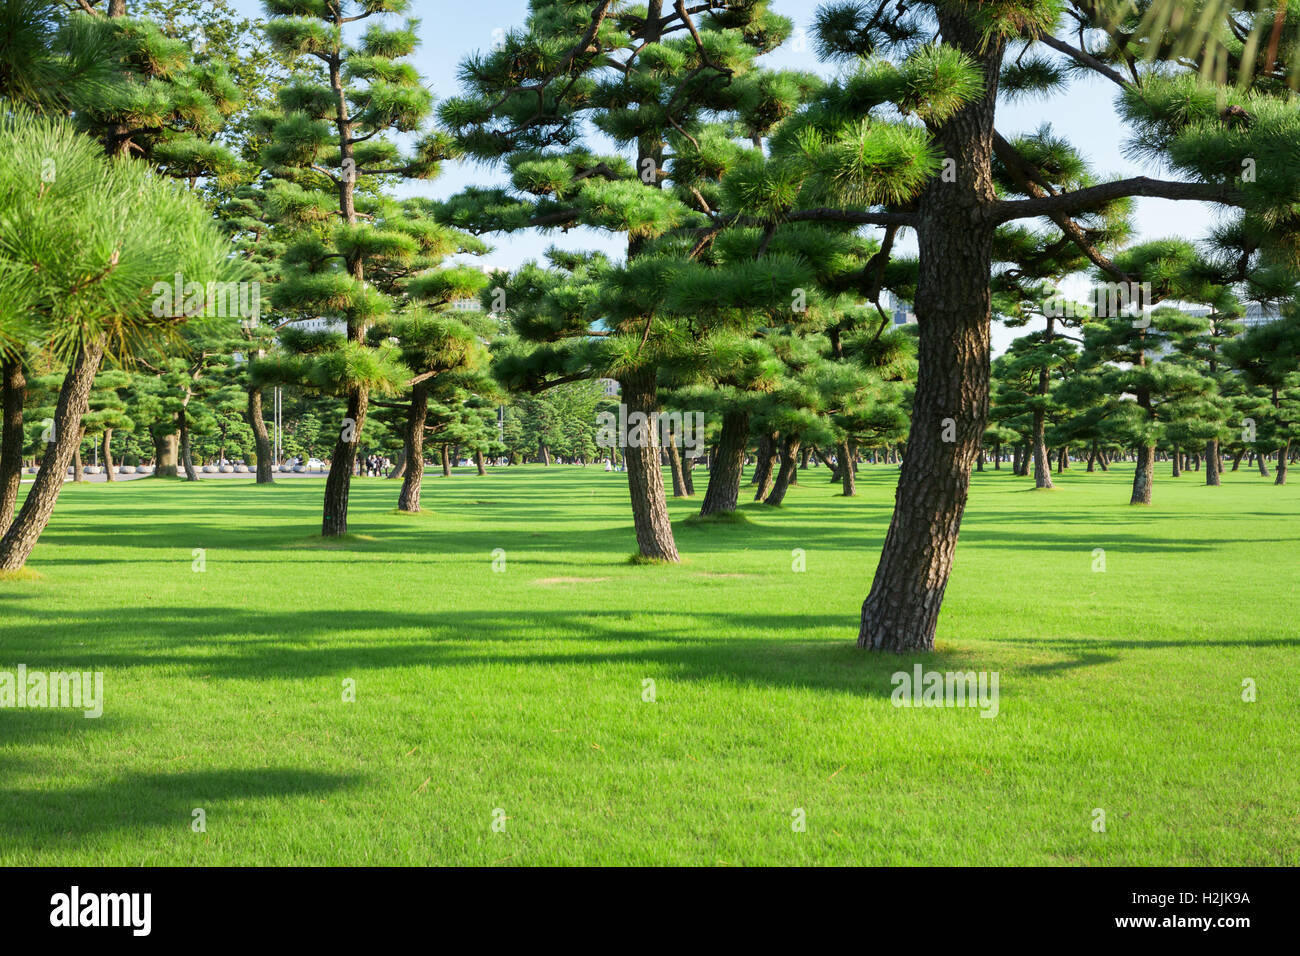 Pine trees park in Tokio, Japan Stock Photo